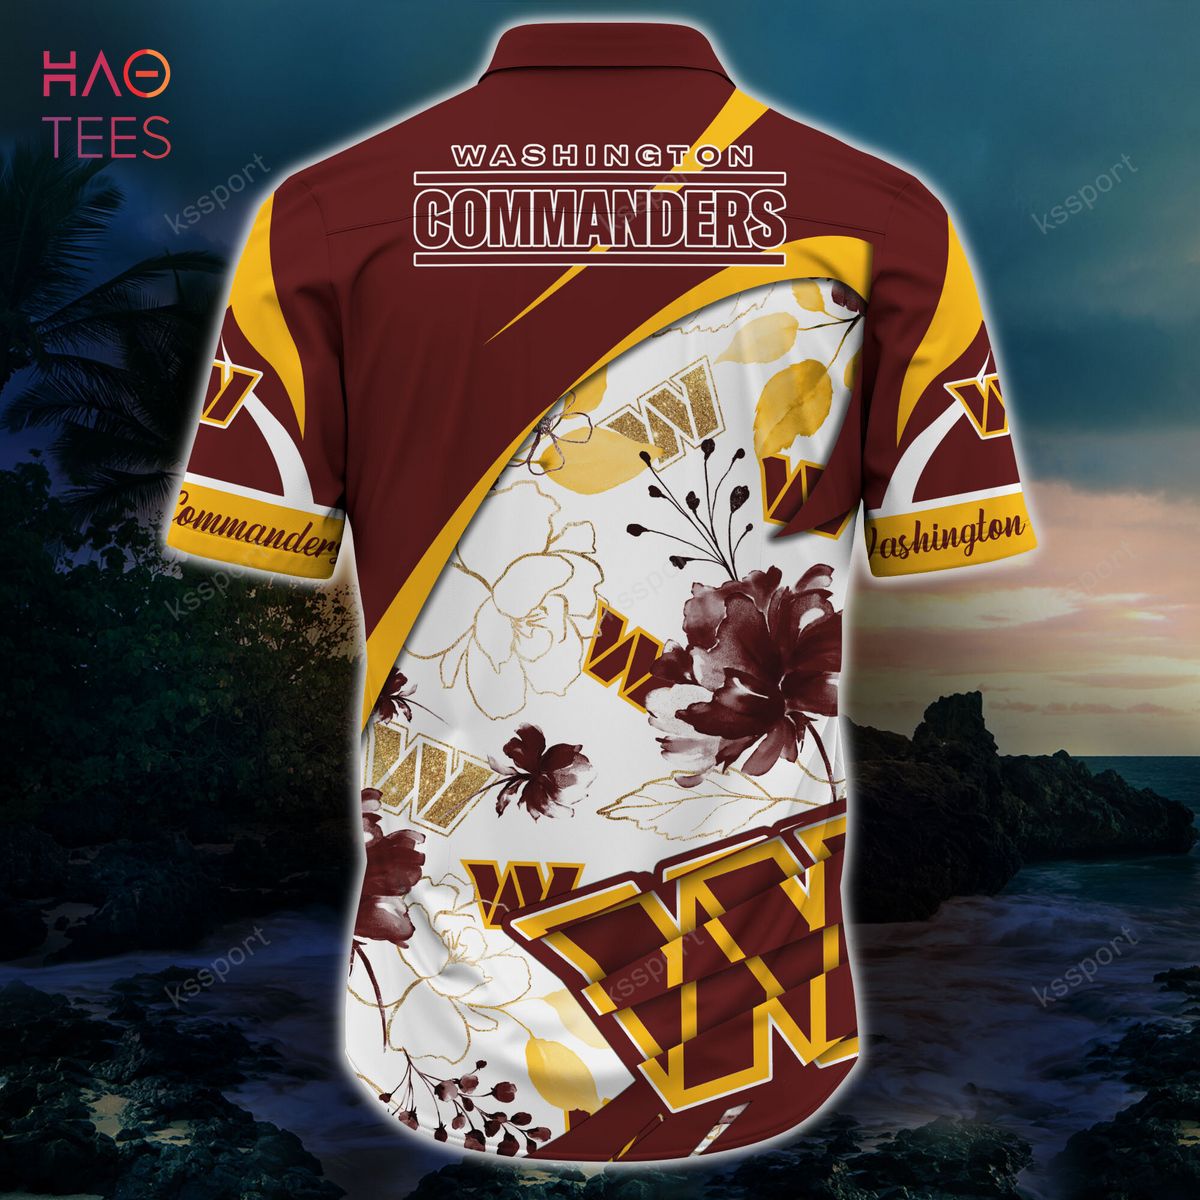 new commander jerseys